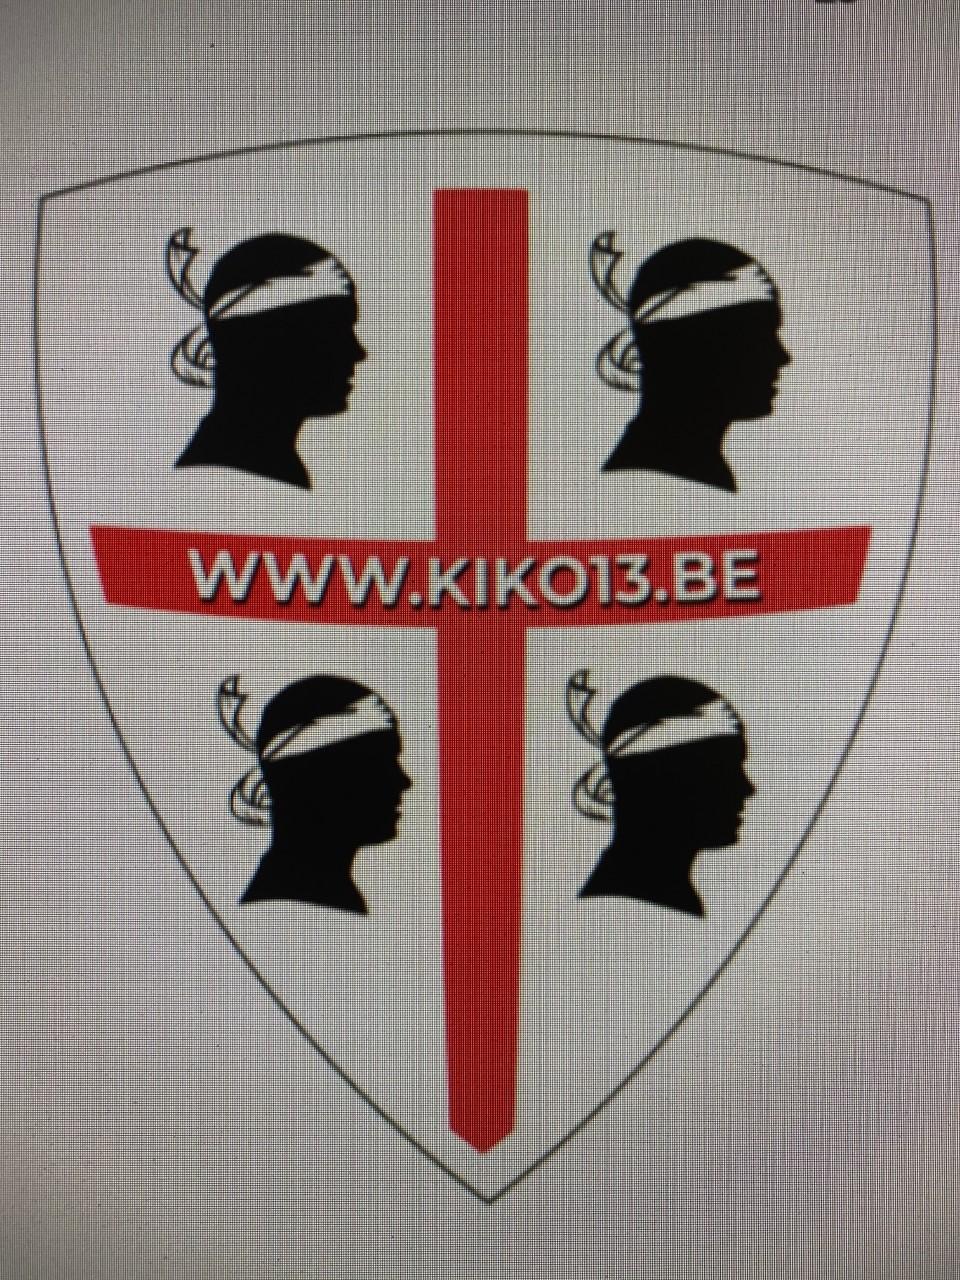 Logo kiko13